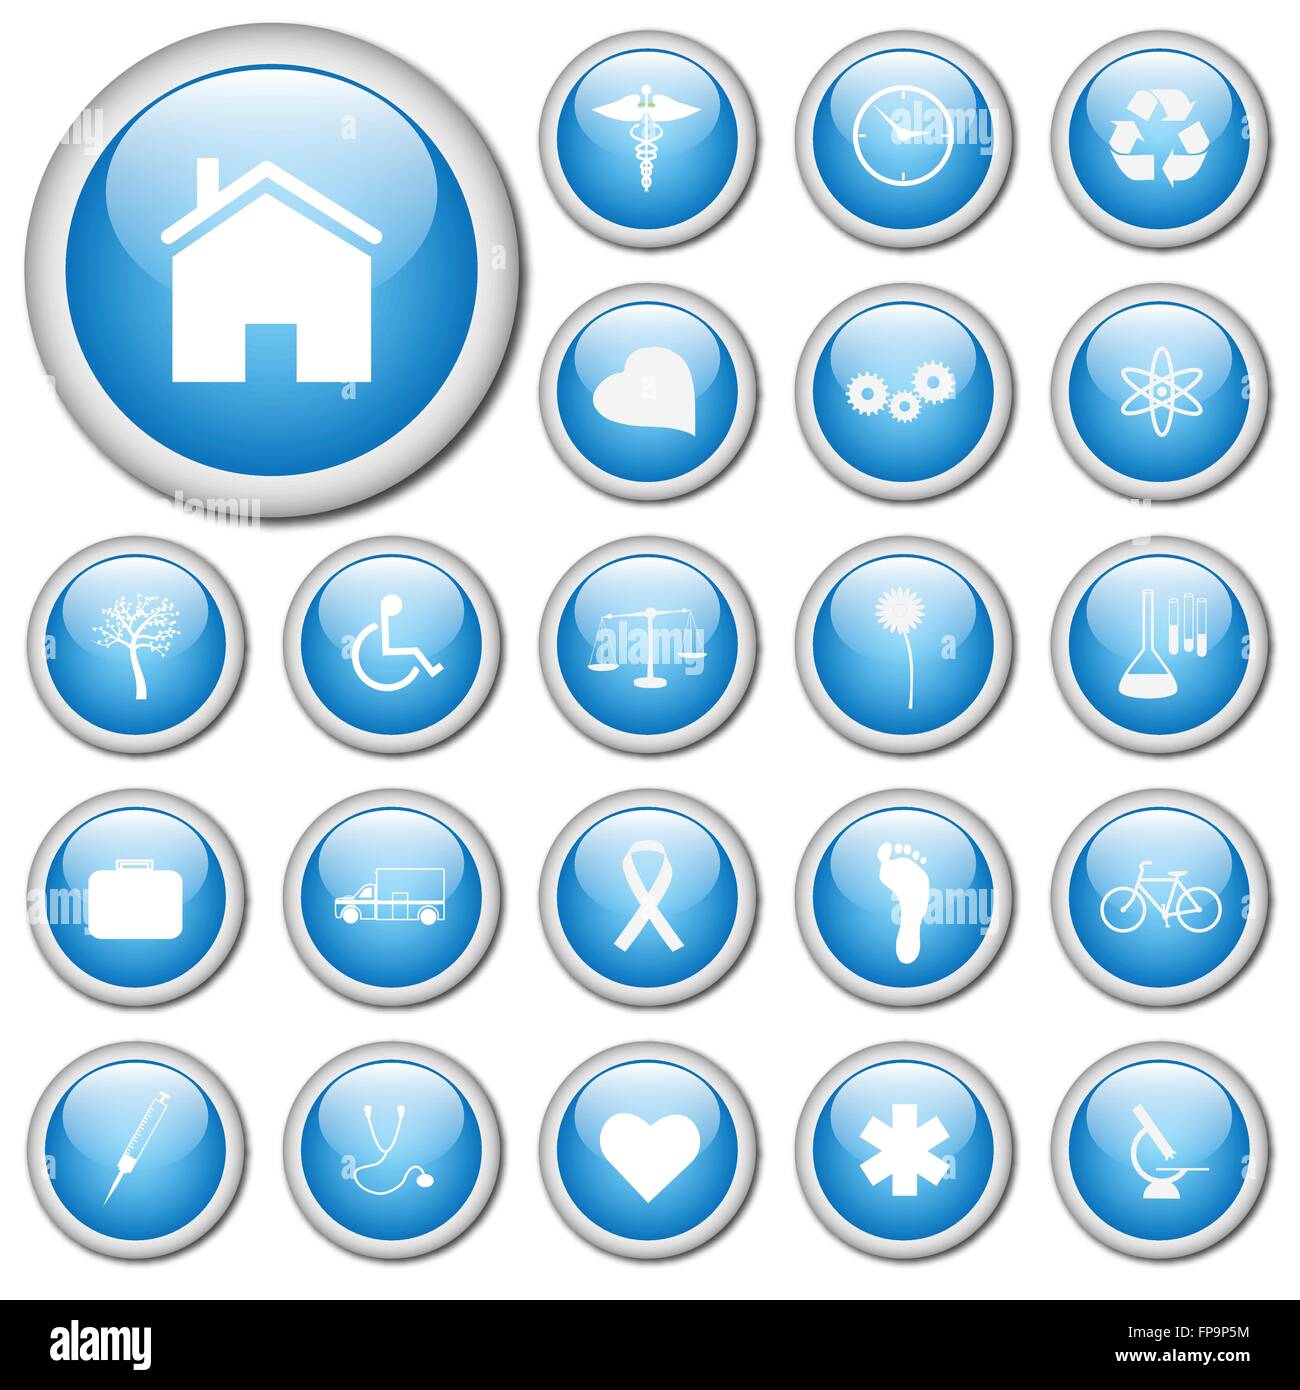 Bild von verschiedenen weiße Symbole auf bunten blauen Schaltflächen. Stock Vektor